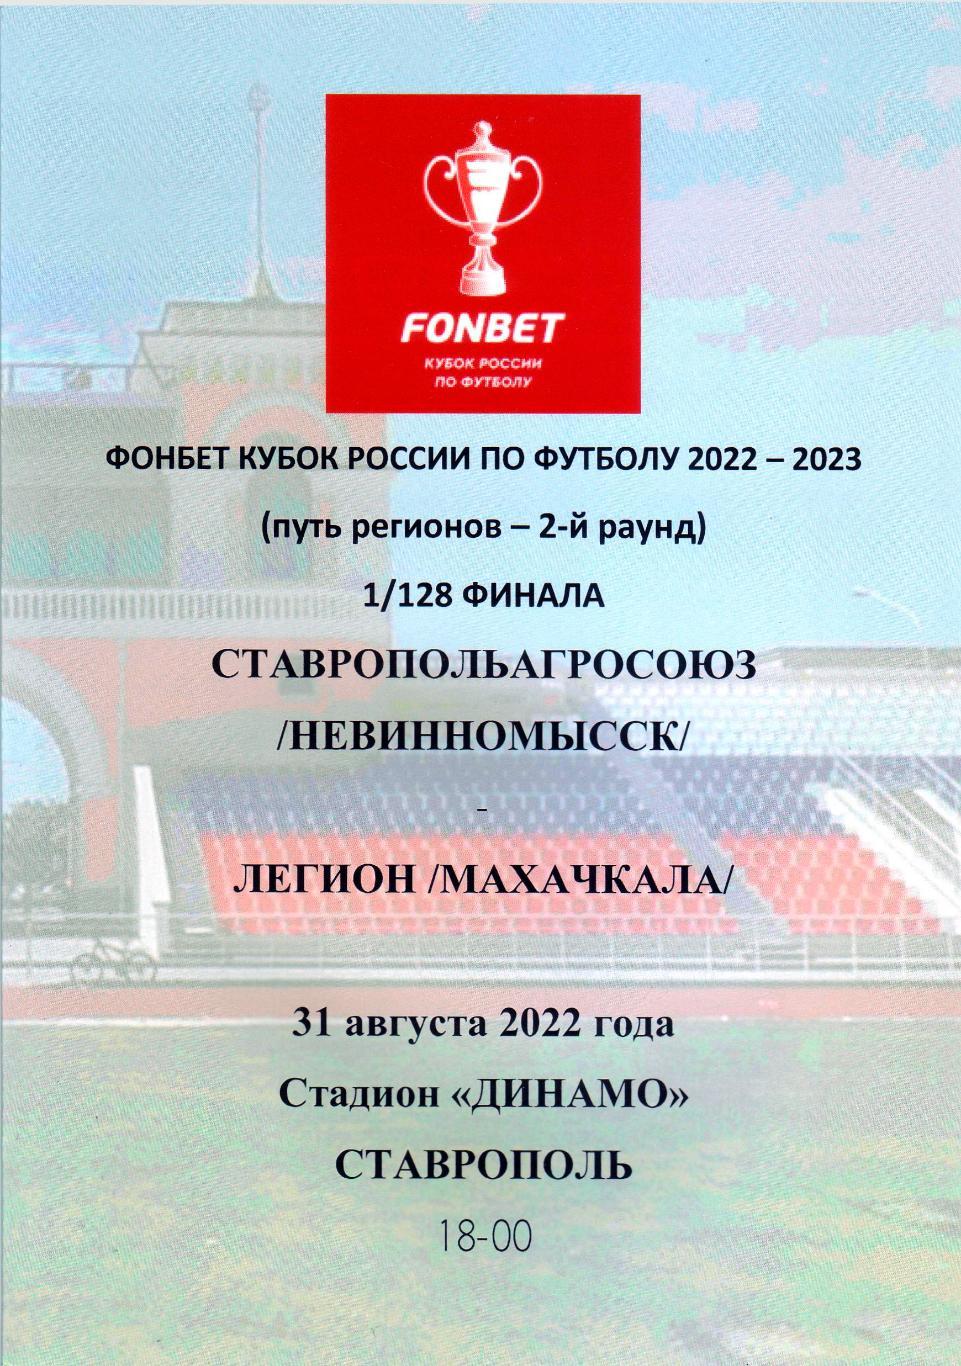 Ставропольагросоюз Невинномысск - Легион Махачкала - 31.08.2022 (кубок)